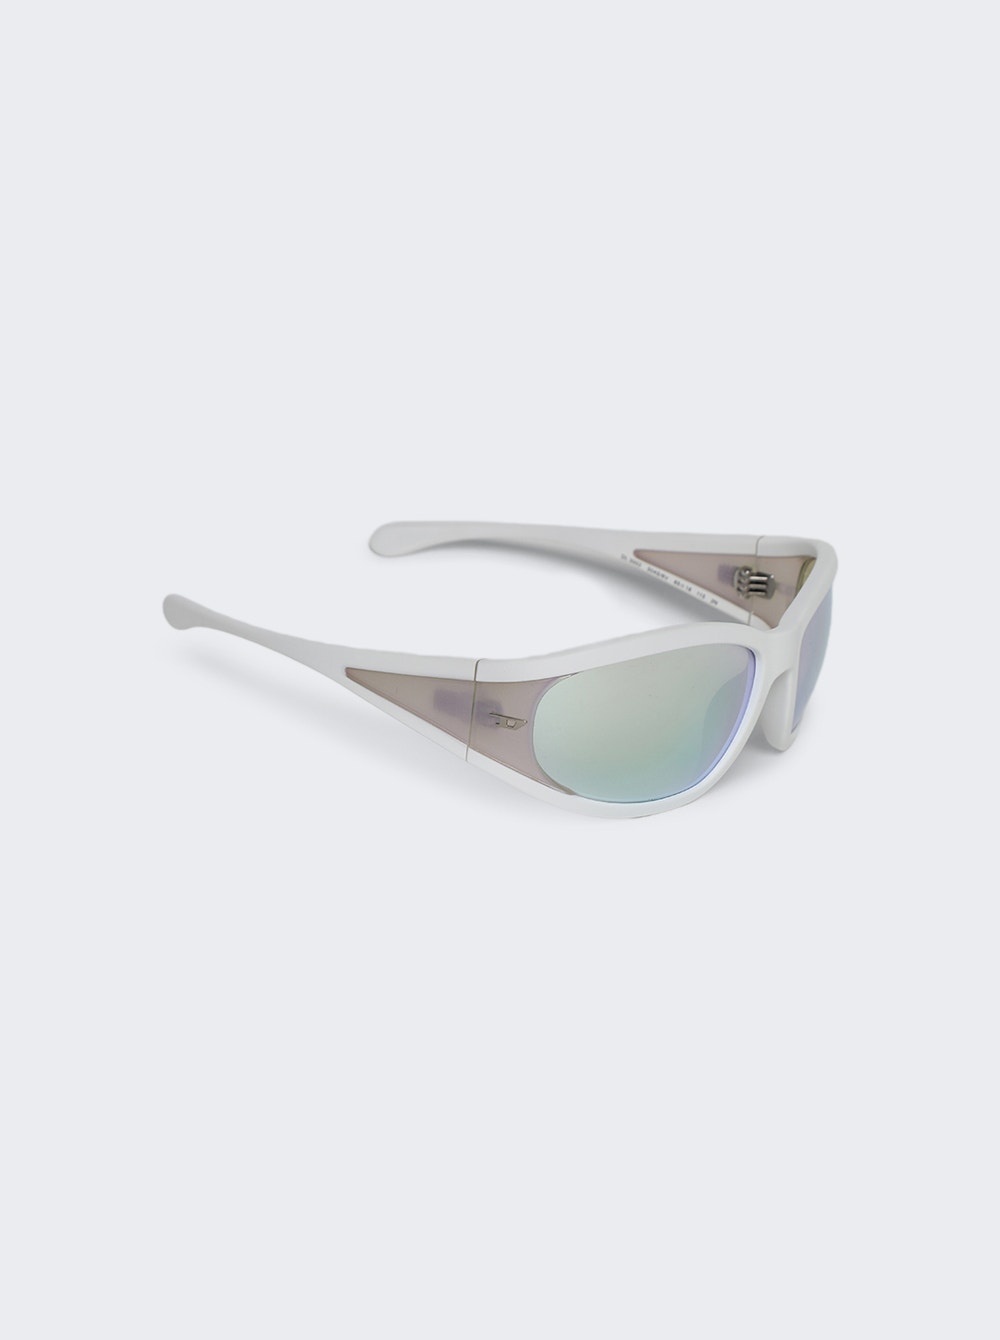 Lx3002 Sunglasses Matte White - 4